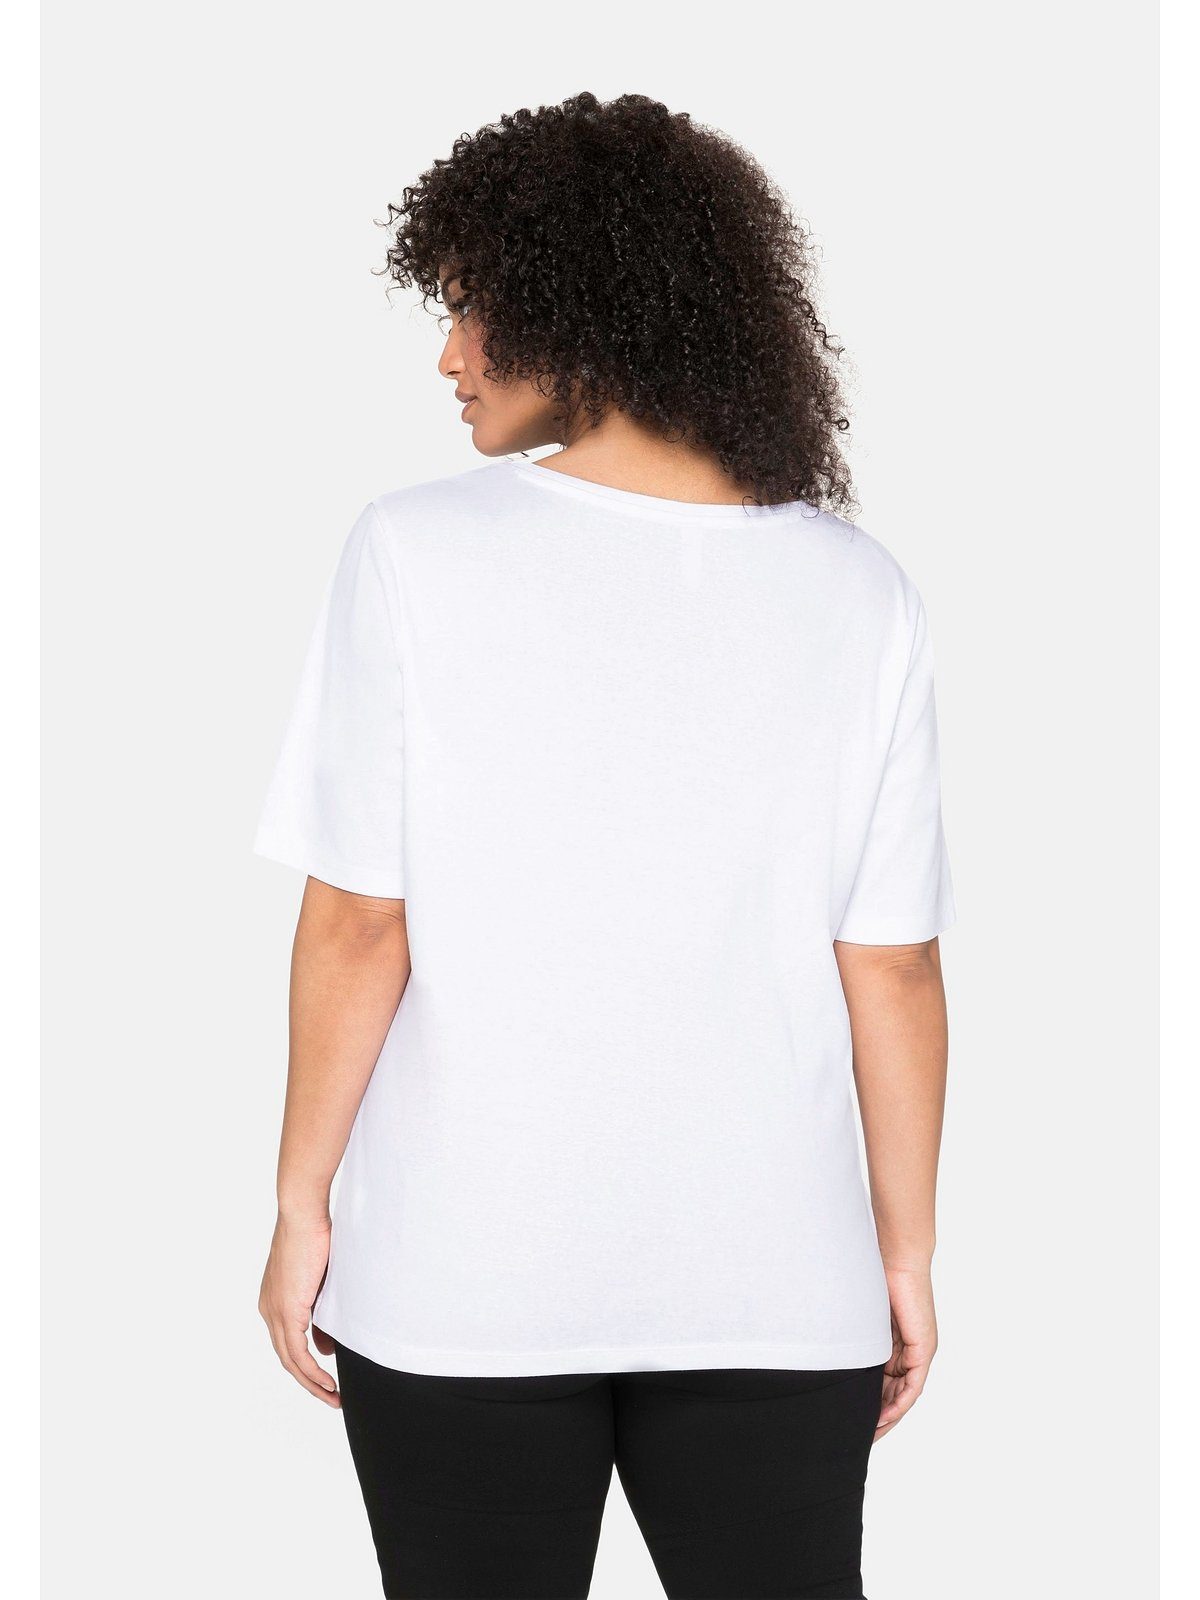 Sheego T-Shirt Große Größen aus reiner weiß Baumwolle